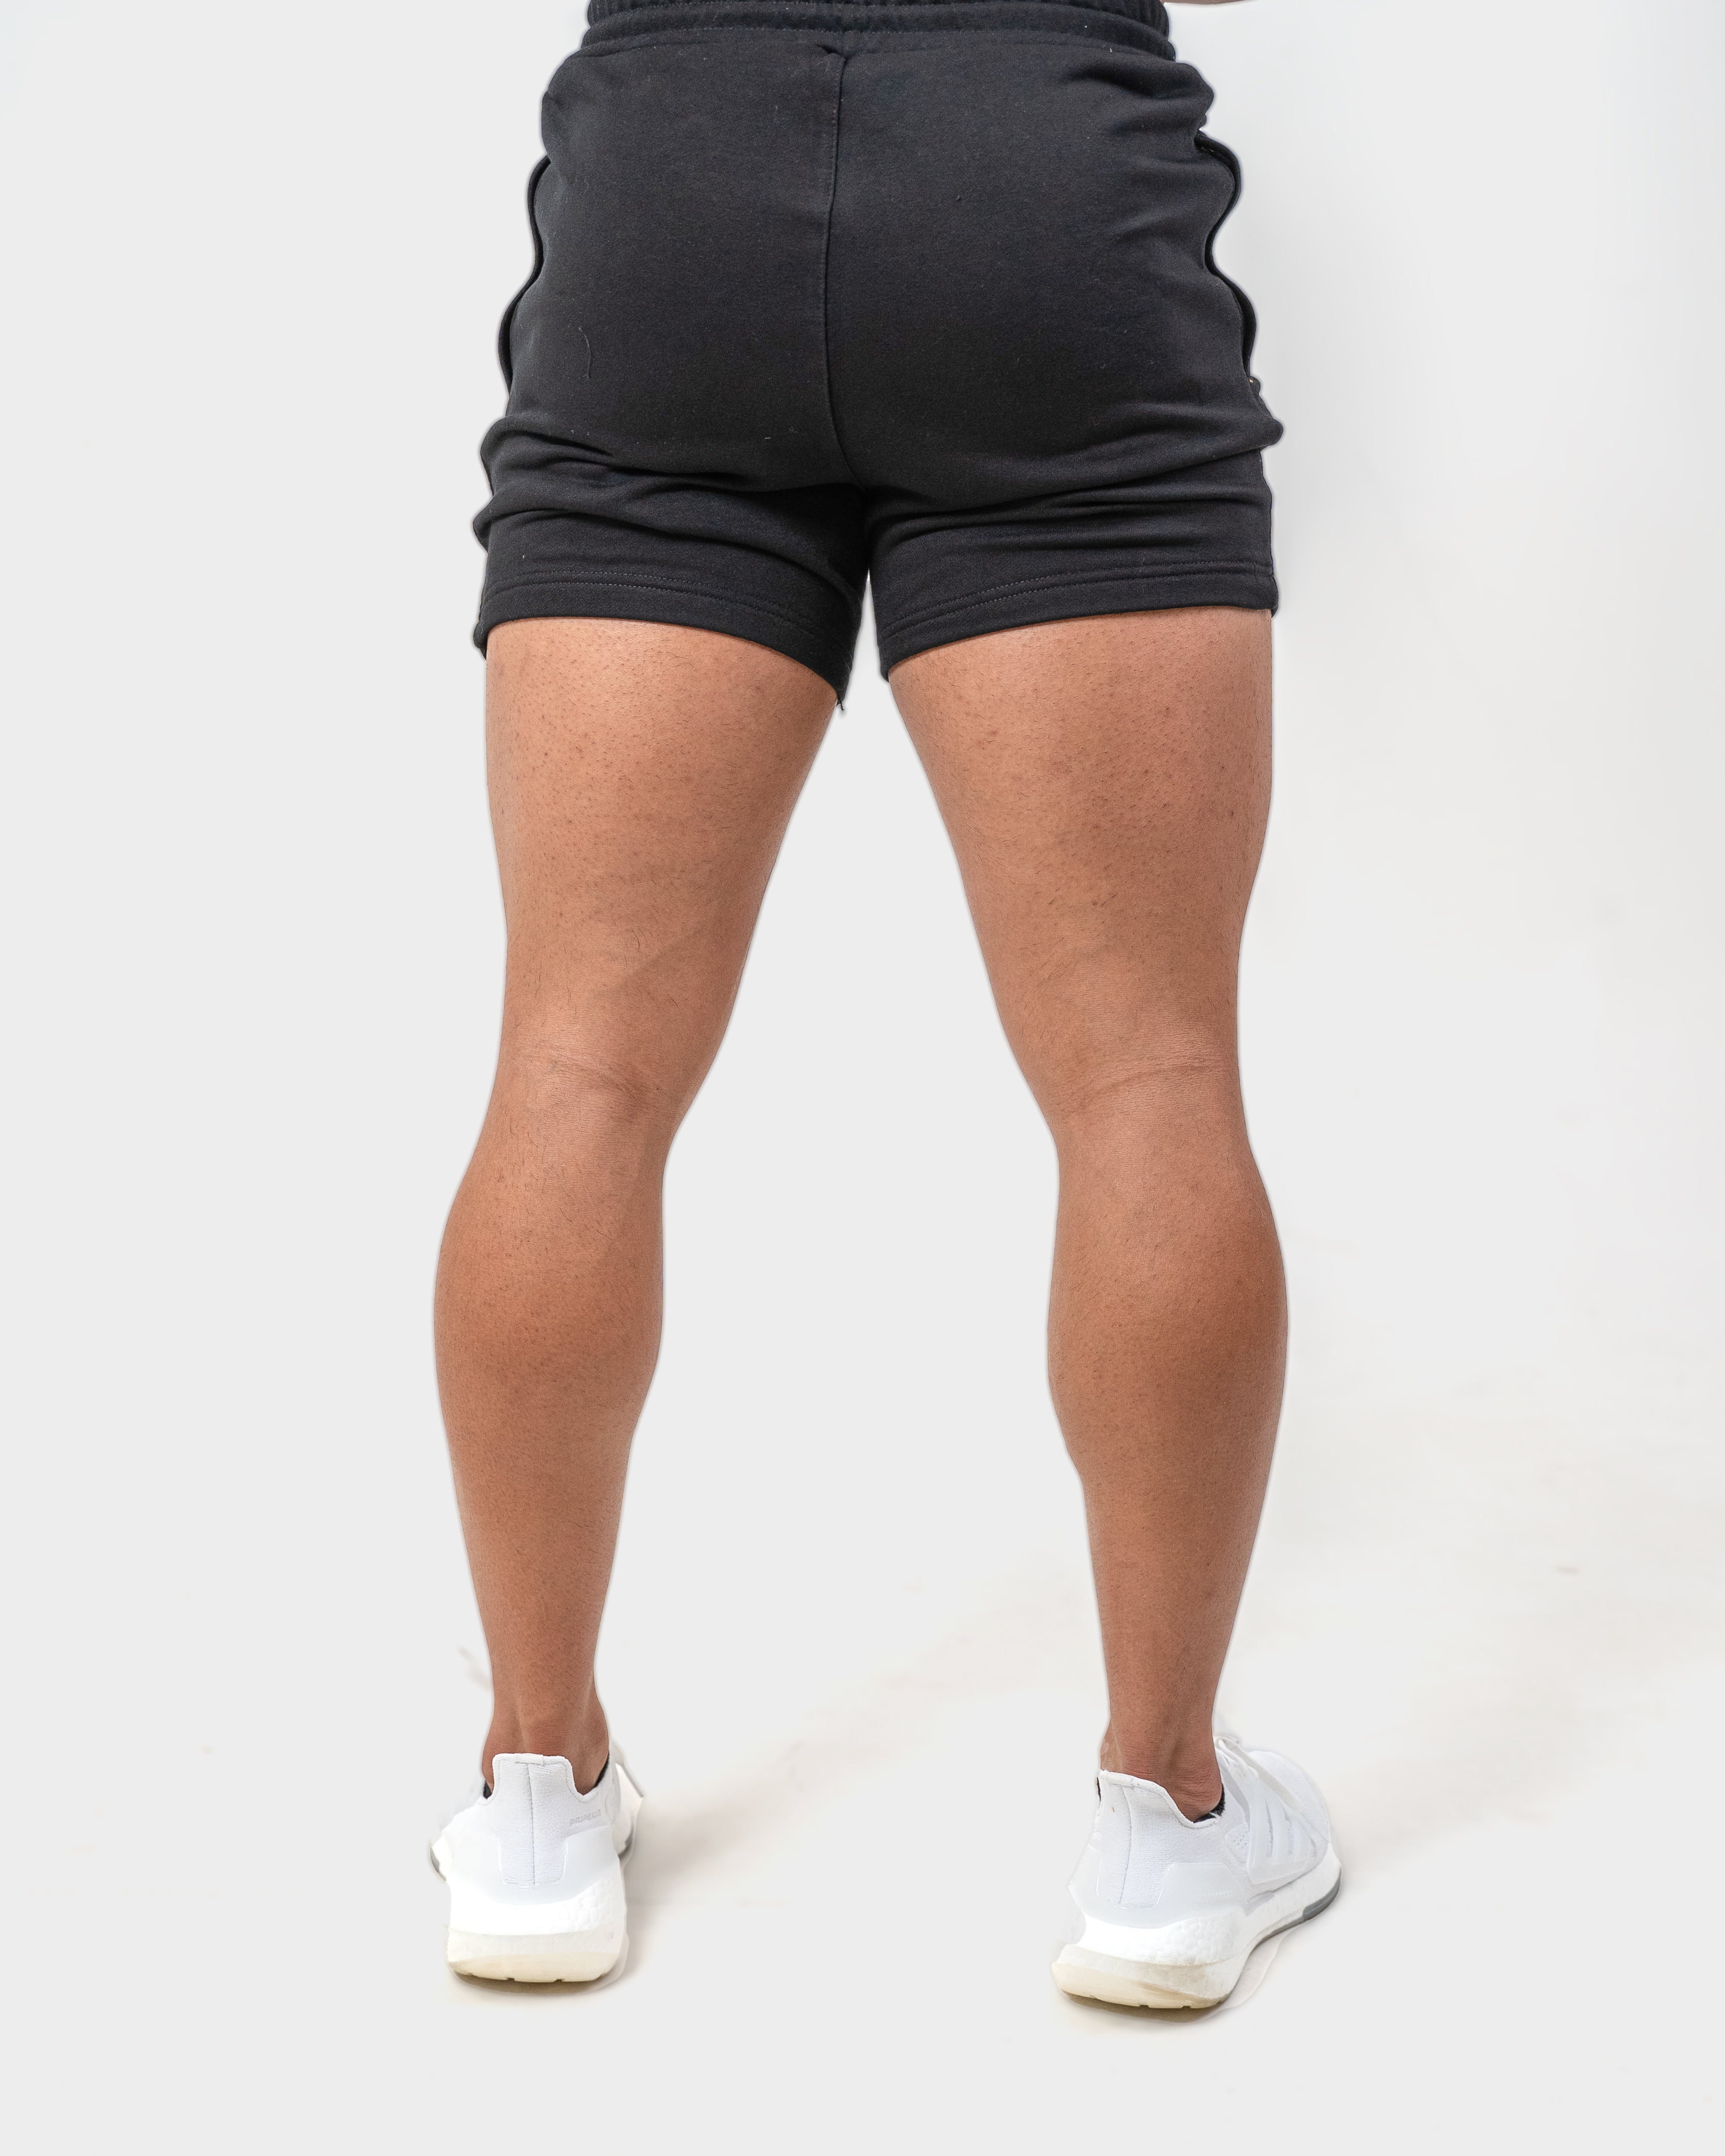 Kanga 5" Shorts - Black - GYMROOS